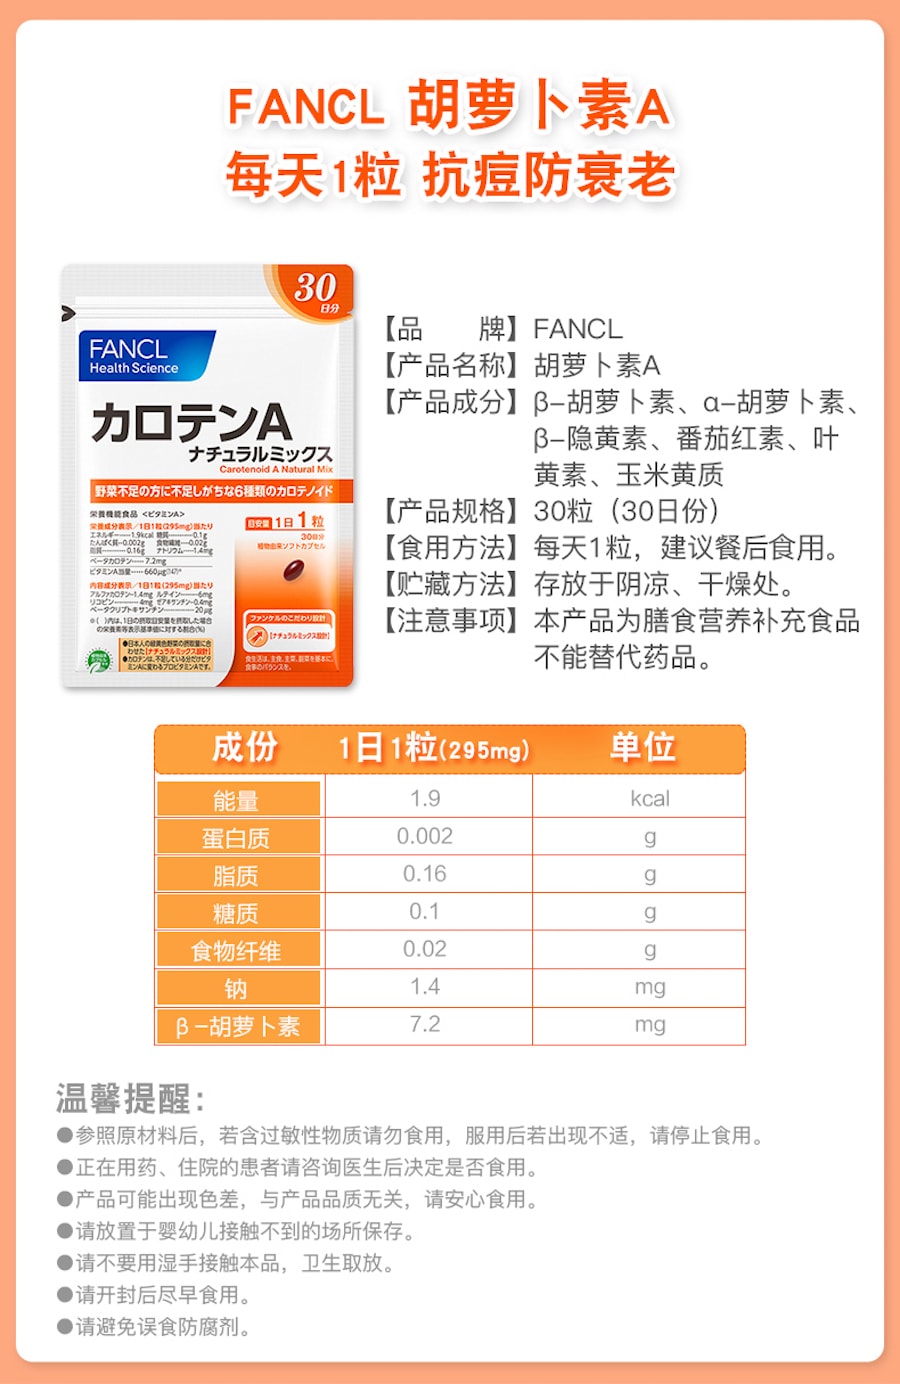 【日本直邮】FANCL芳珂 综合抗氧胡萝卜素植物纤维 维他命A 30粒30日份